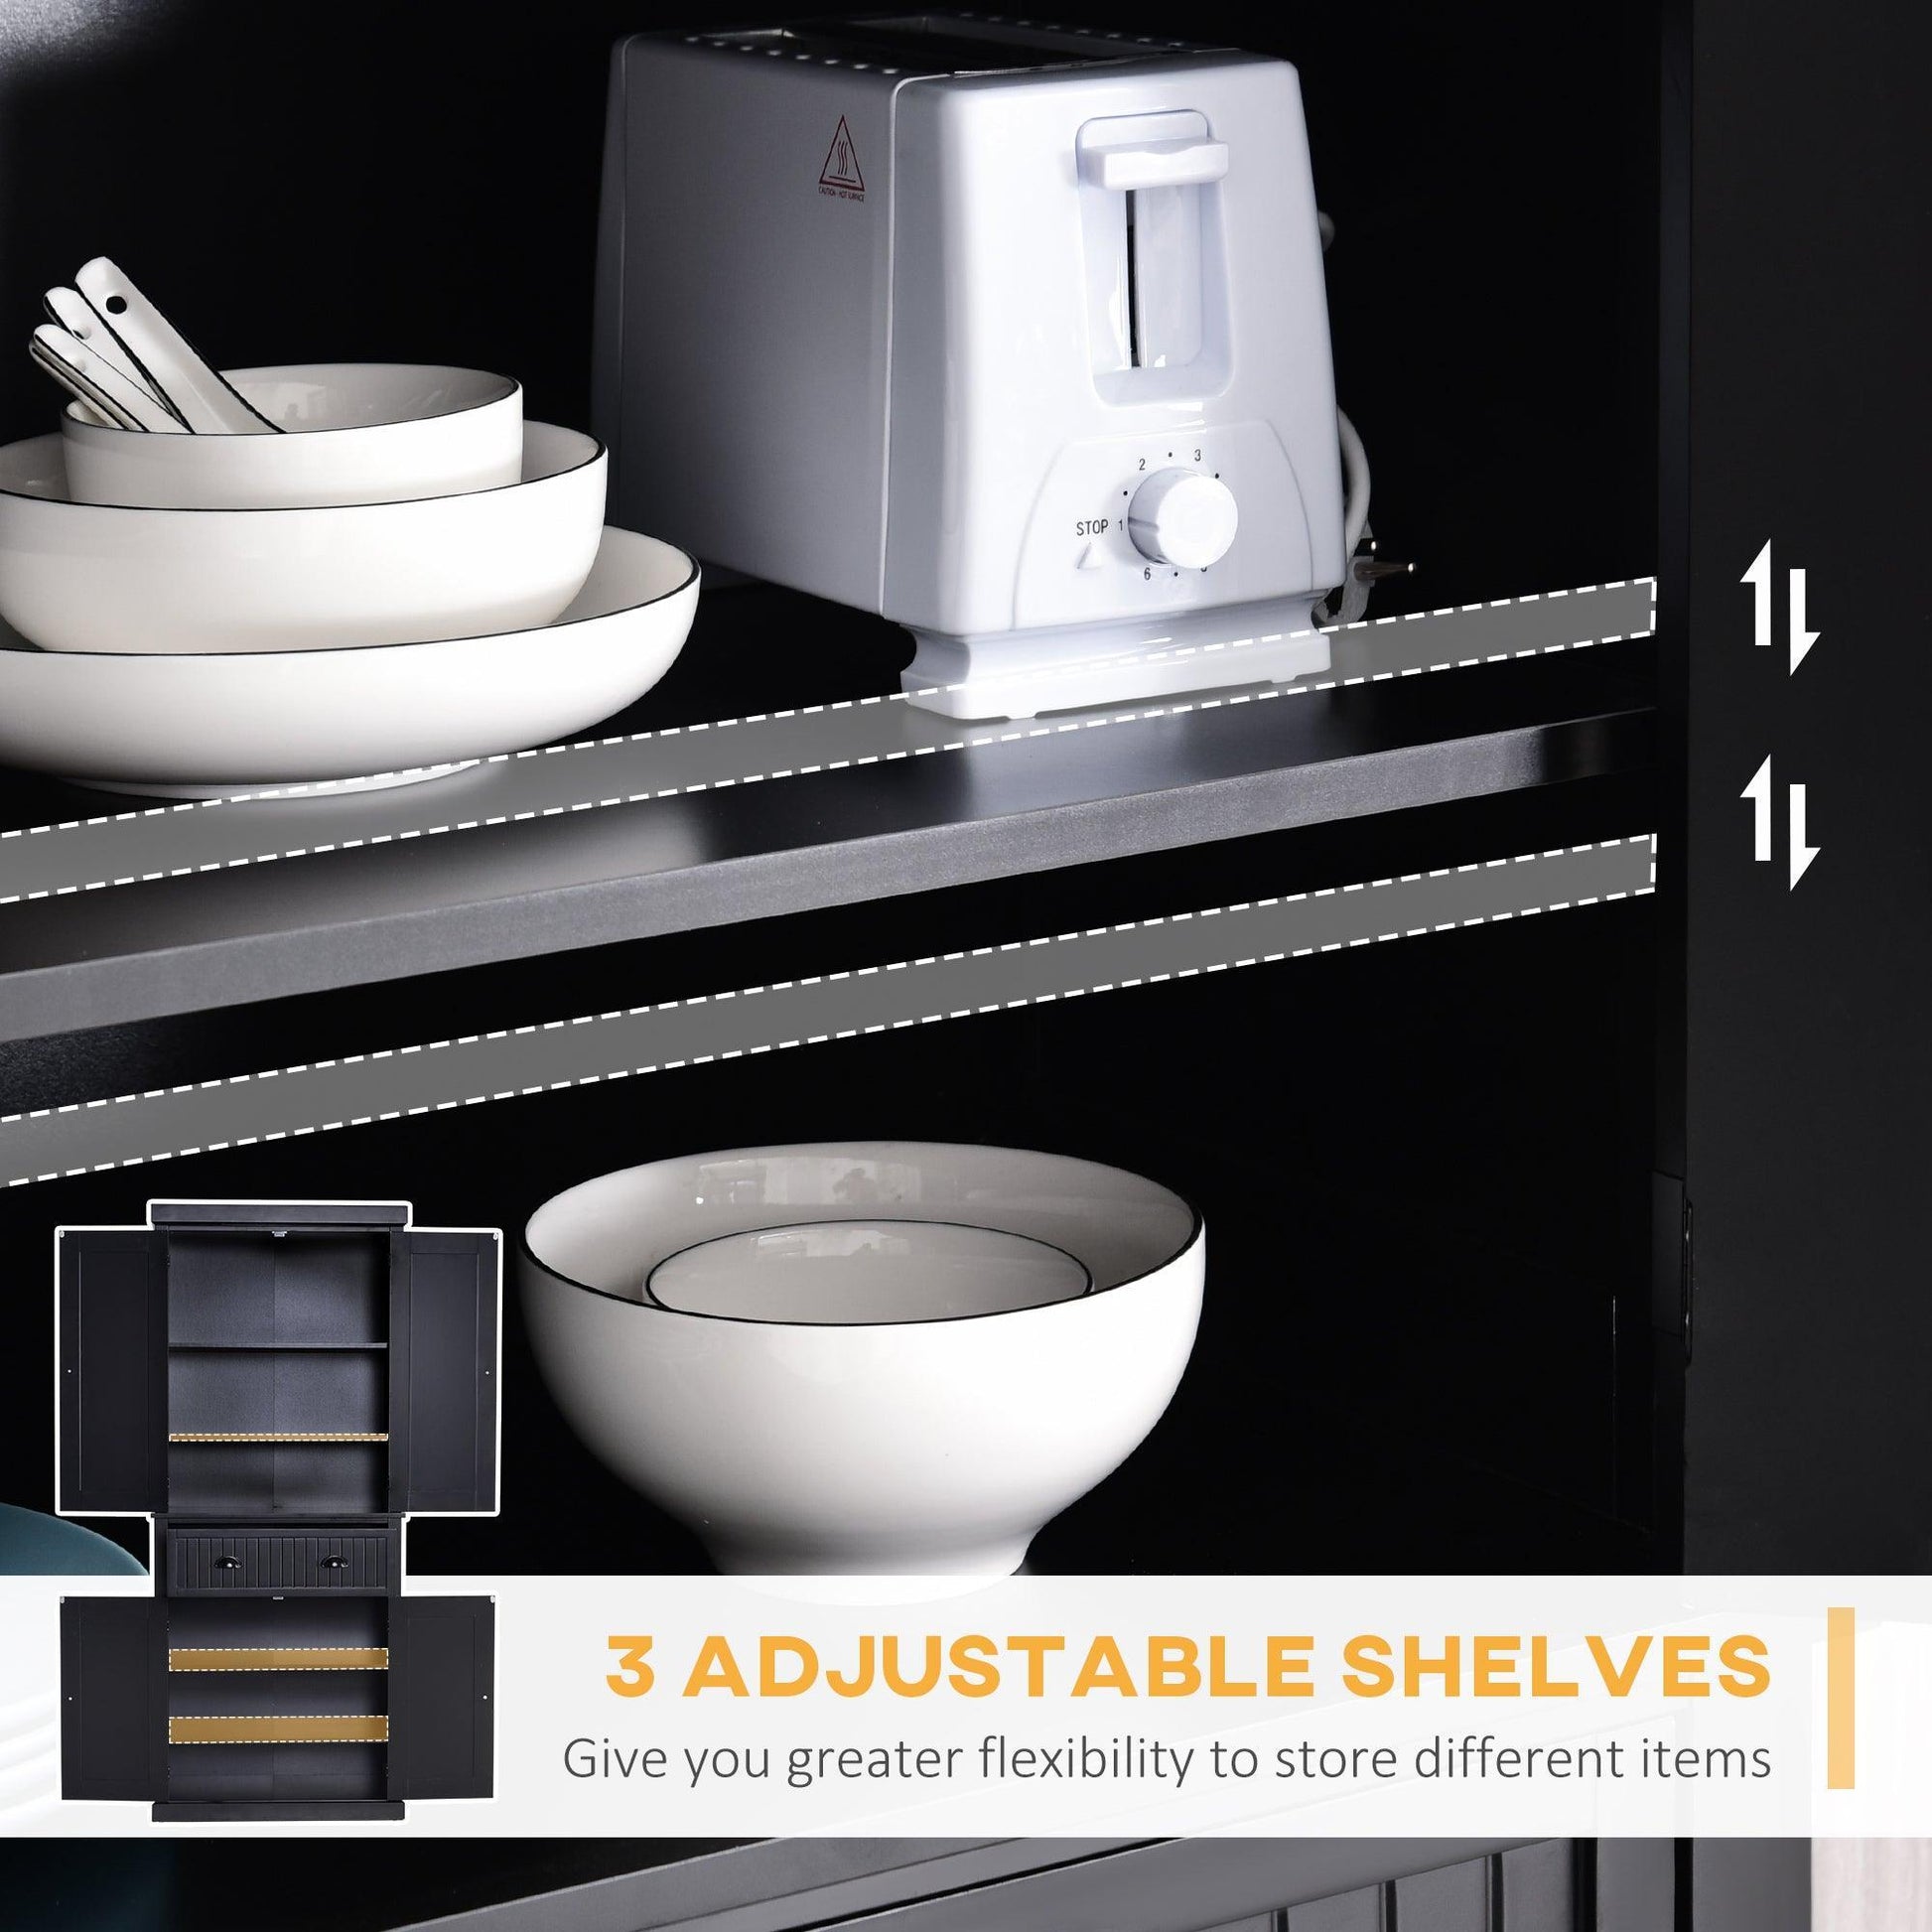 HOMCOM Modern Black Kitchen Storage Cabinet with Drawer - ALL4U RETAILER LTD